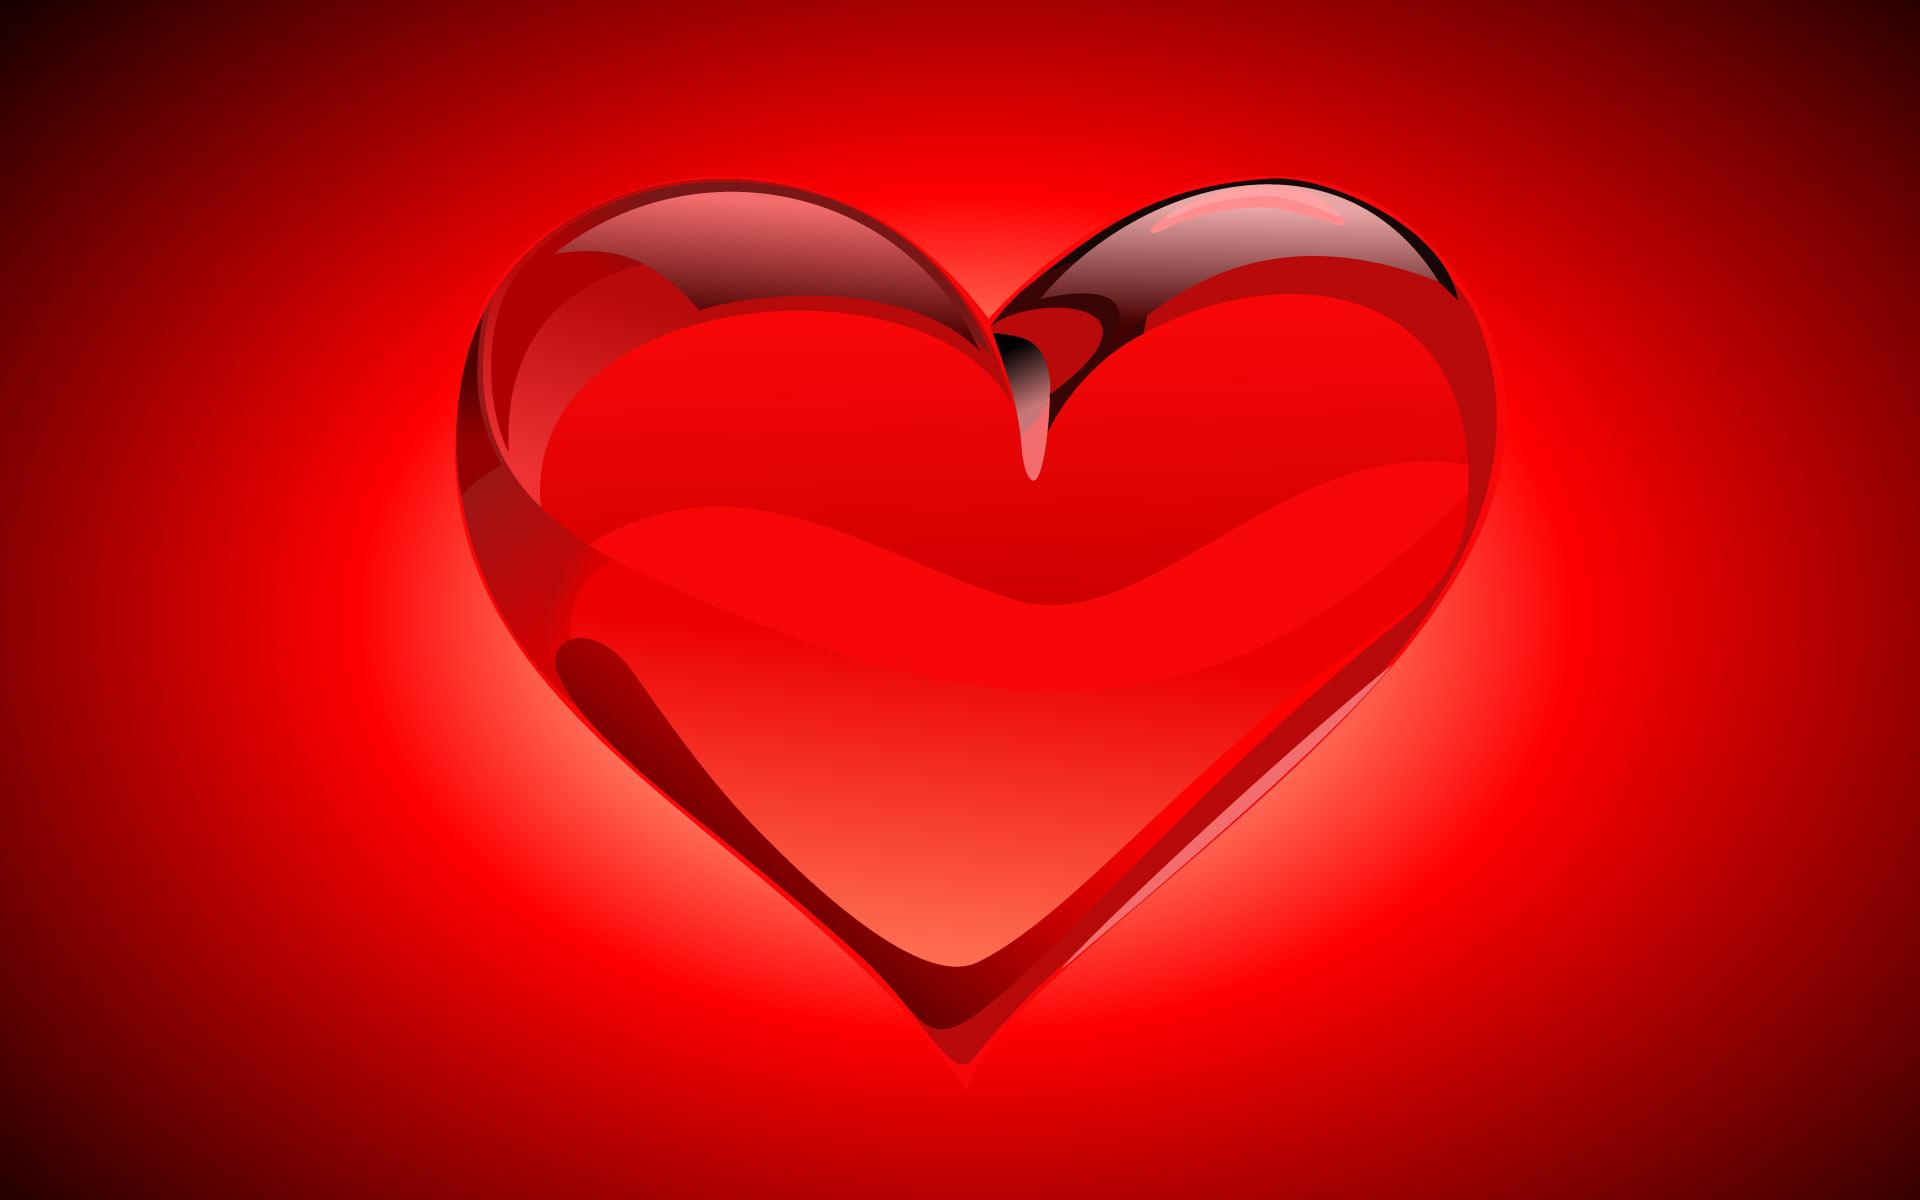 Download wallpaper: red glass wallpaper, heart, download photo, wallpapers  for desktop, heart red